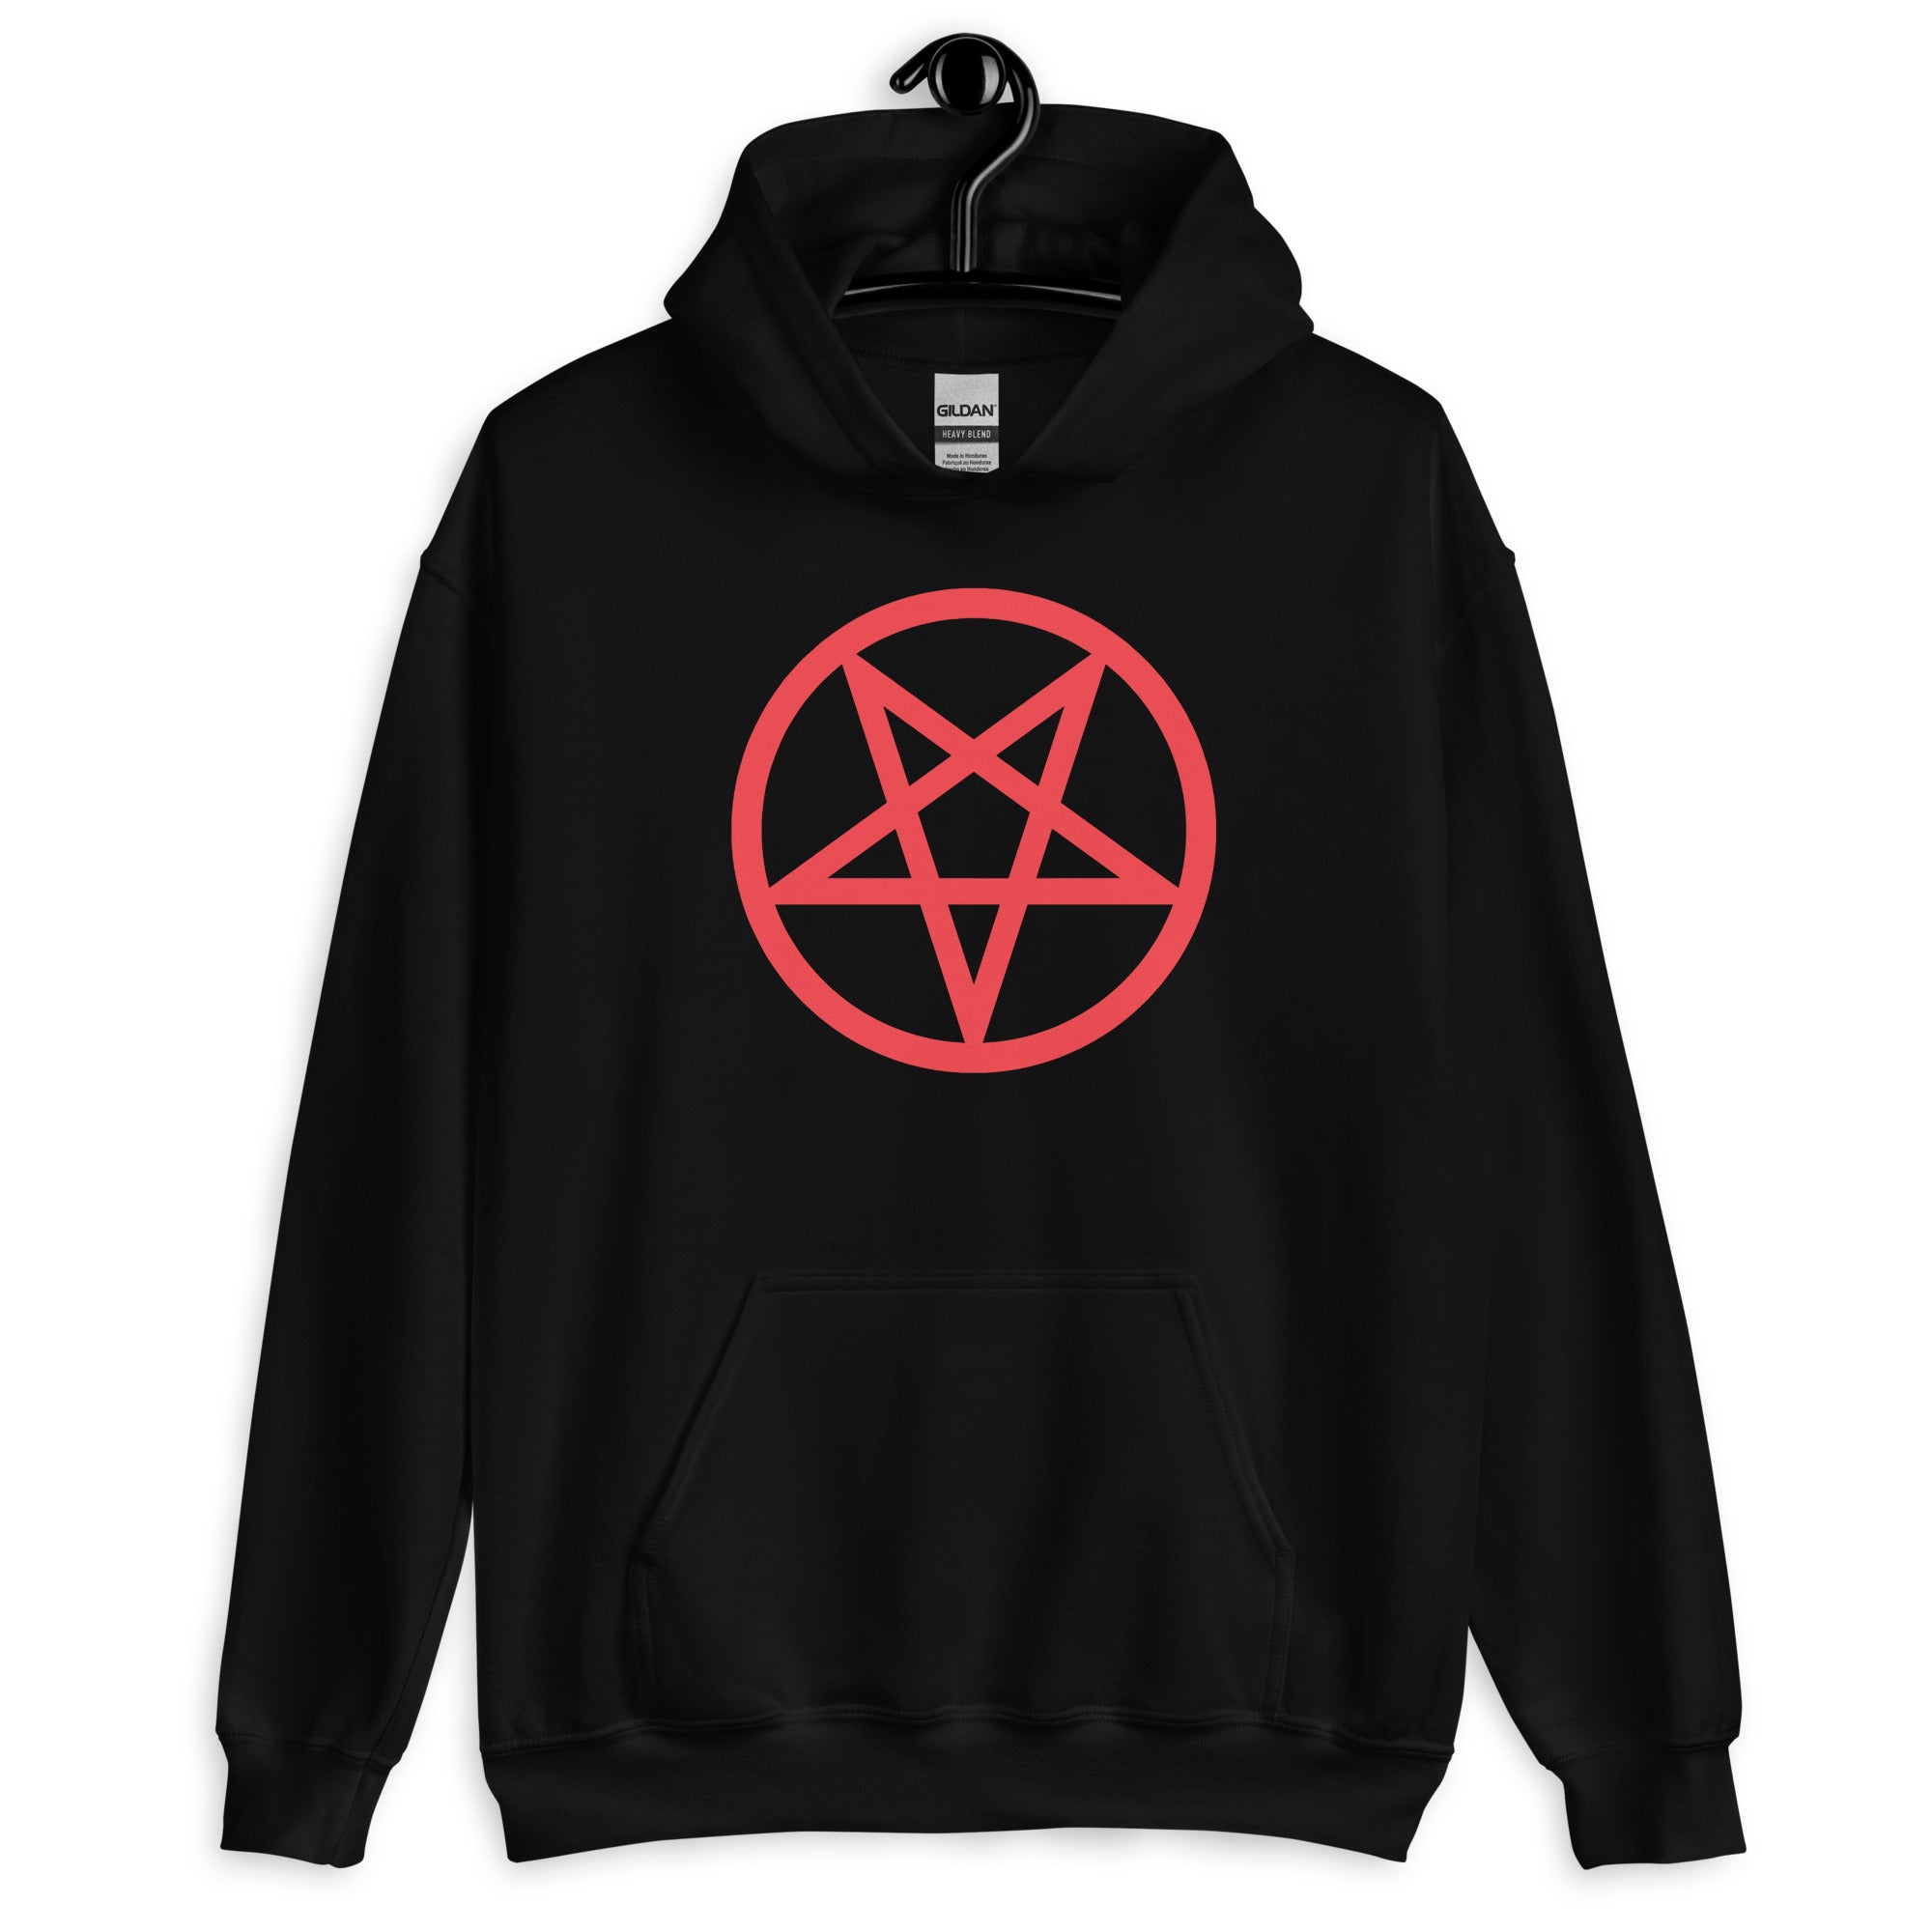 Red Classic Inverted Pentagram Occult Symbol Unisex Hoodie Sweatshirt - Edge of Life Designs